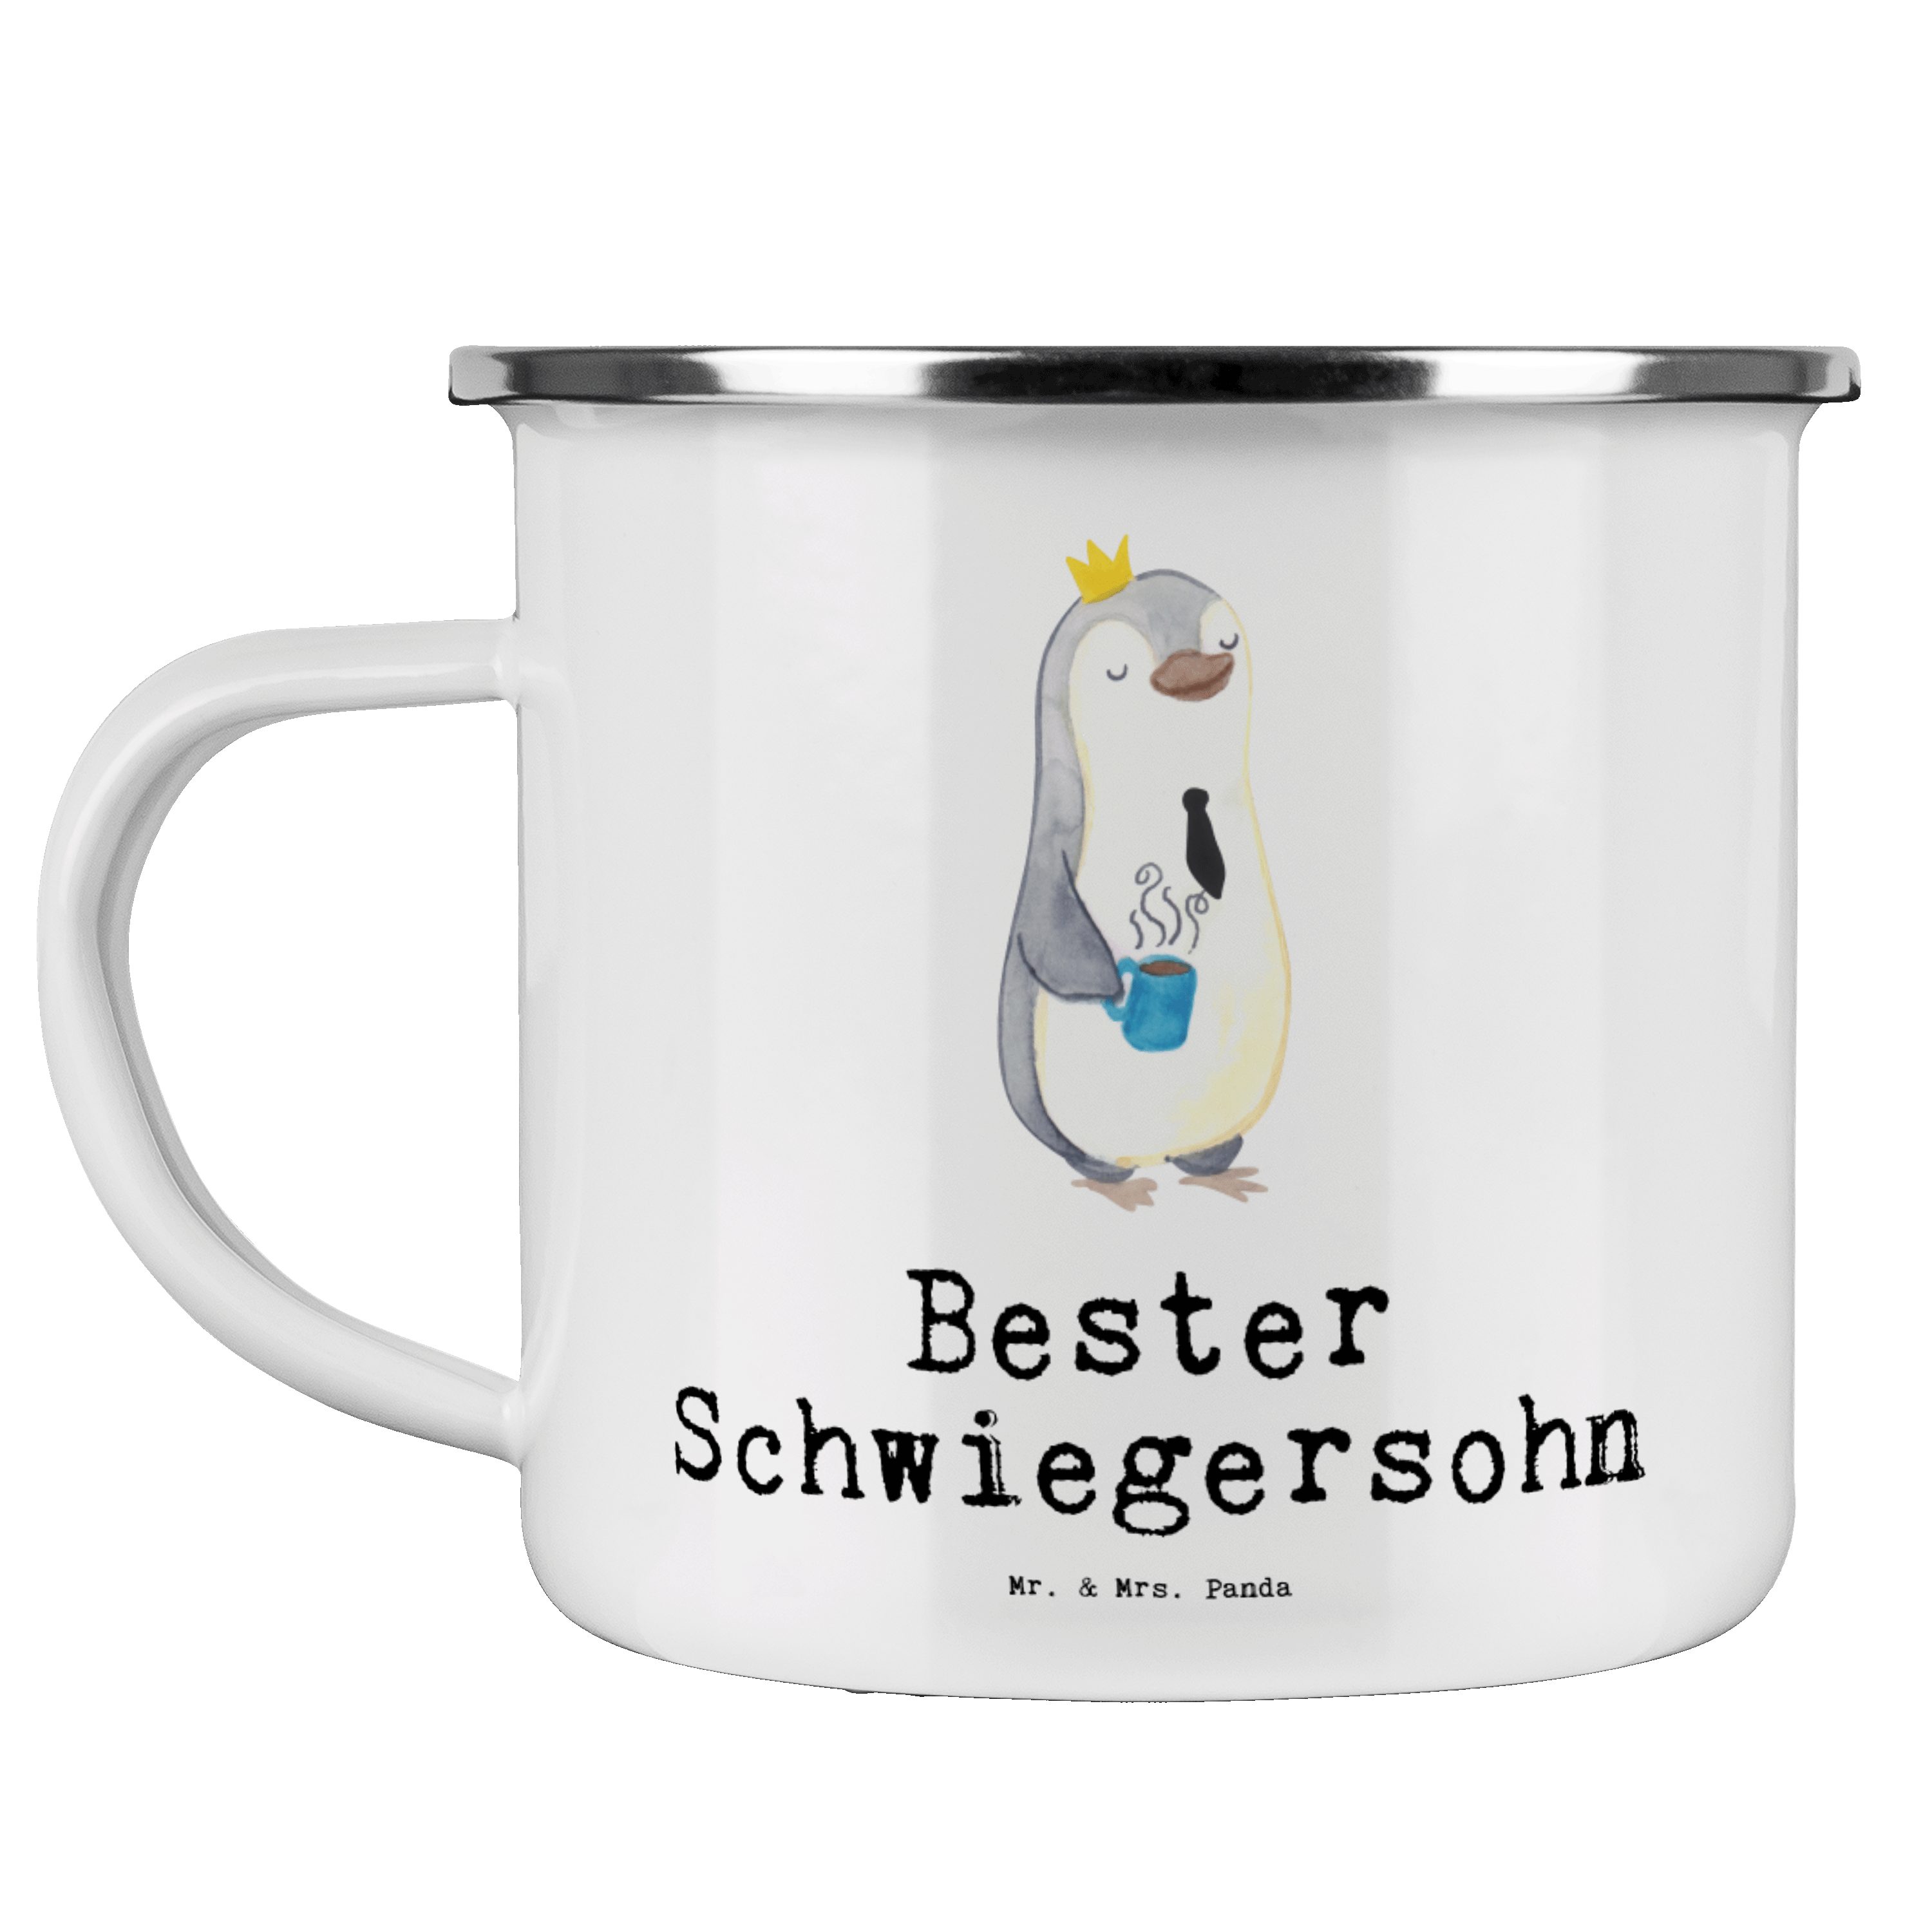 Mr. & Mrs. Panda Becher Pinguin Bester Schwiegersohn - Weiß - Geschenk, Hochzeit, Metalltasse, Emaille